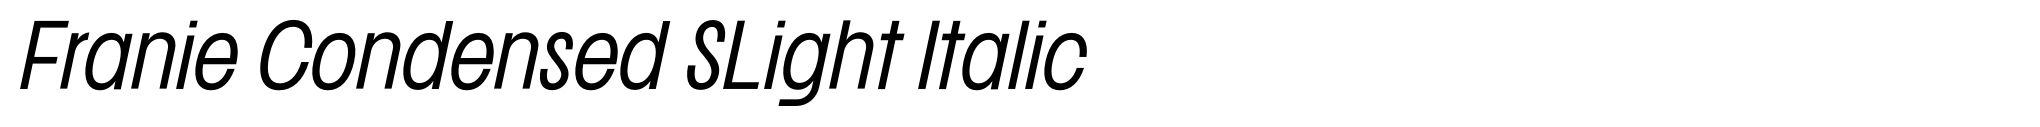 Franie Condensed SLight Italic image